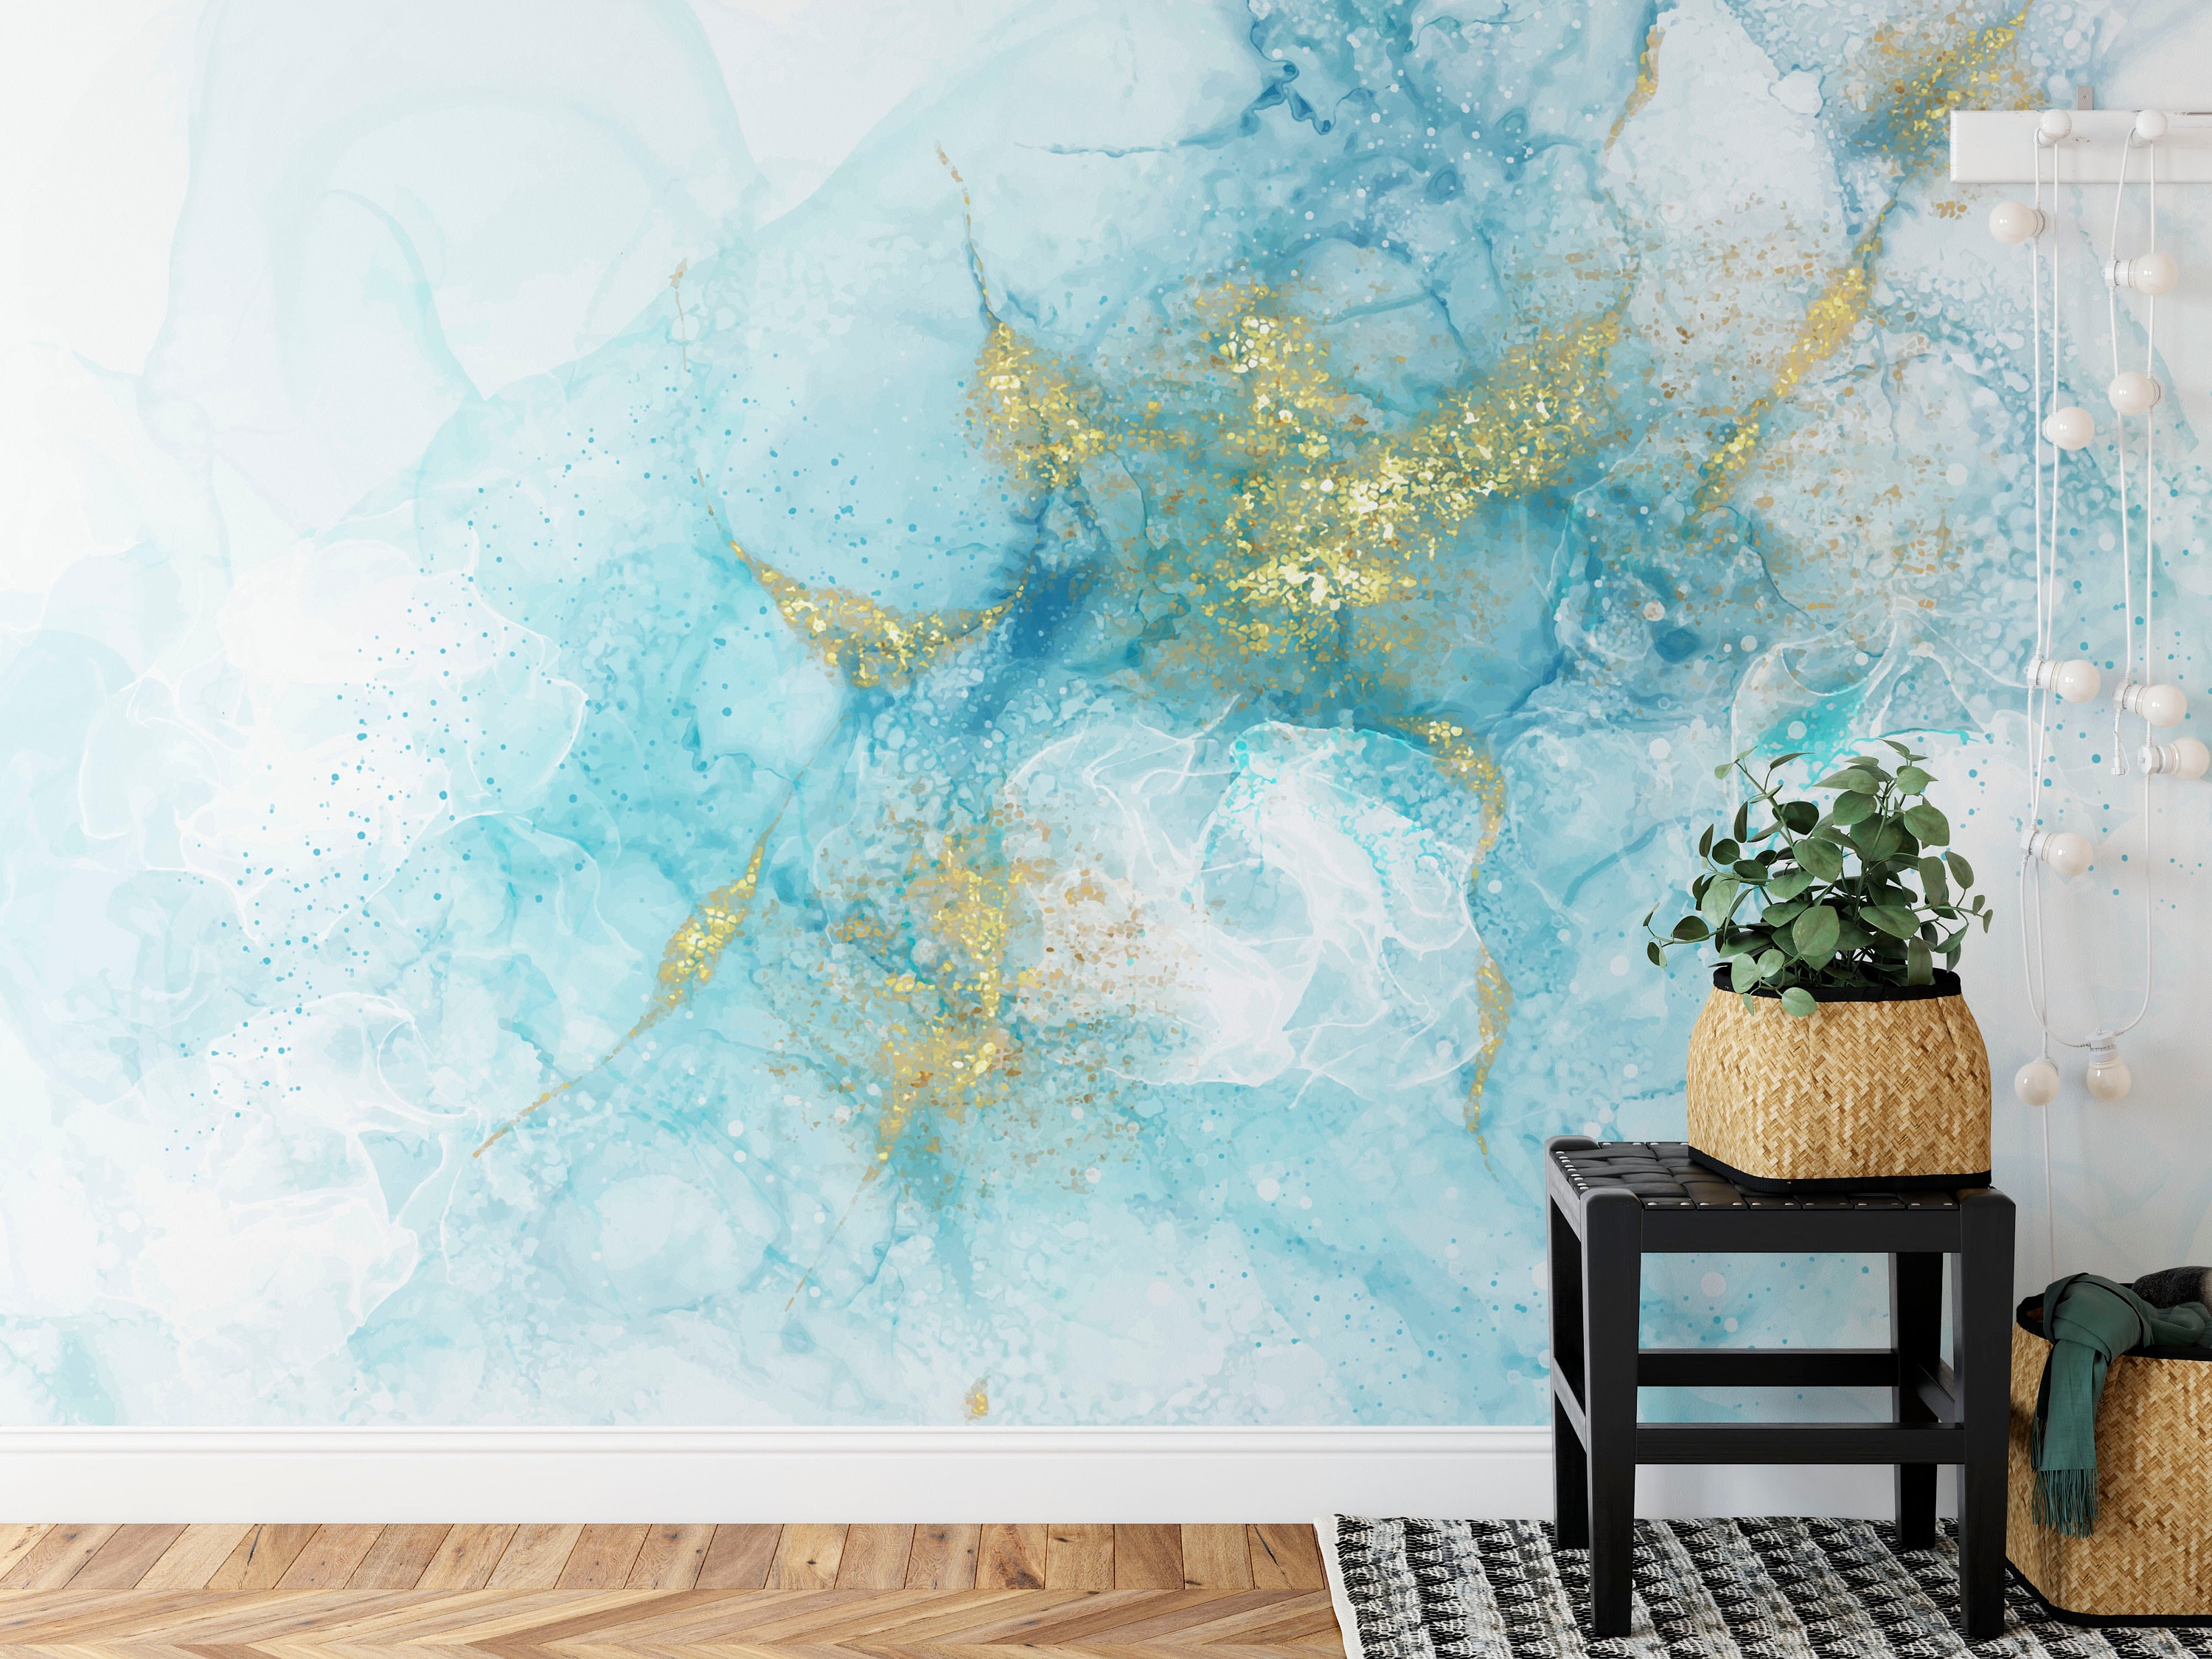  Papel pintado de PVC autoadhesivo pintura azul arte fluido  creativo abstracto pintado a mano textura de mármol despegar y pegar, papel  tapiz extraíble grande mural de pared adhesivo de pared decoración